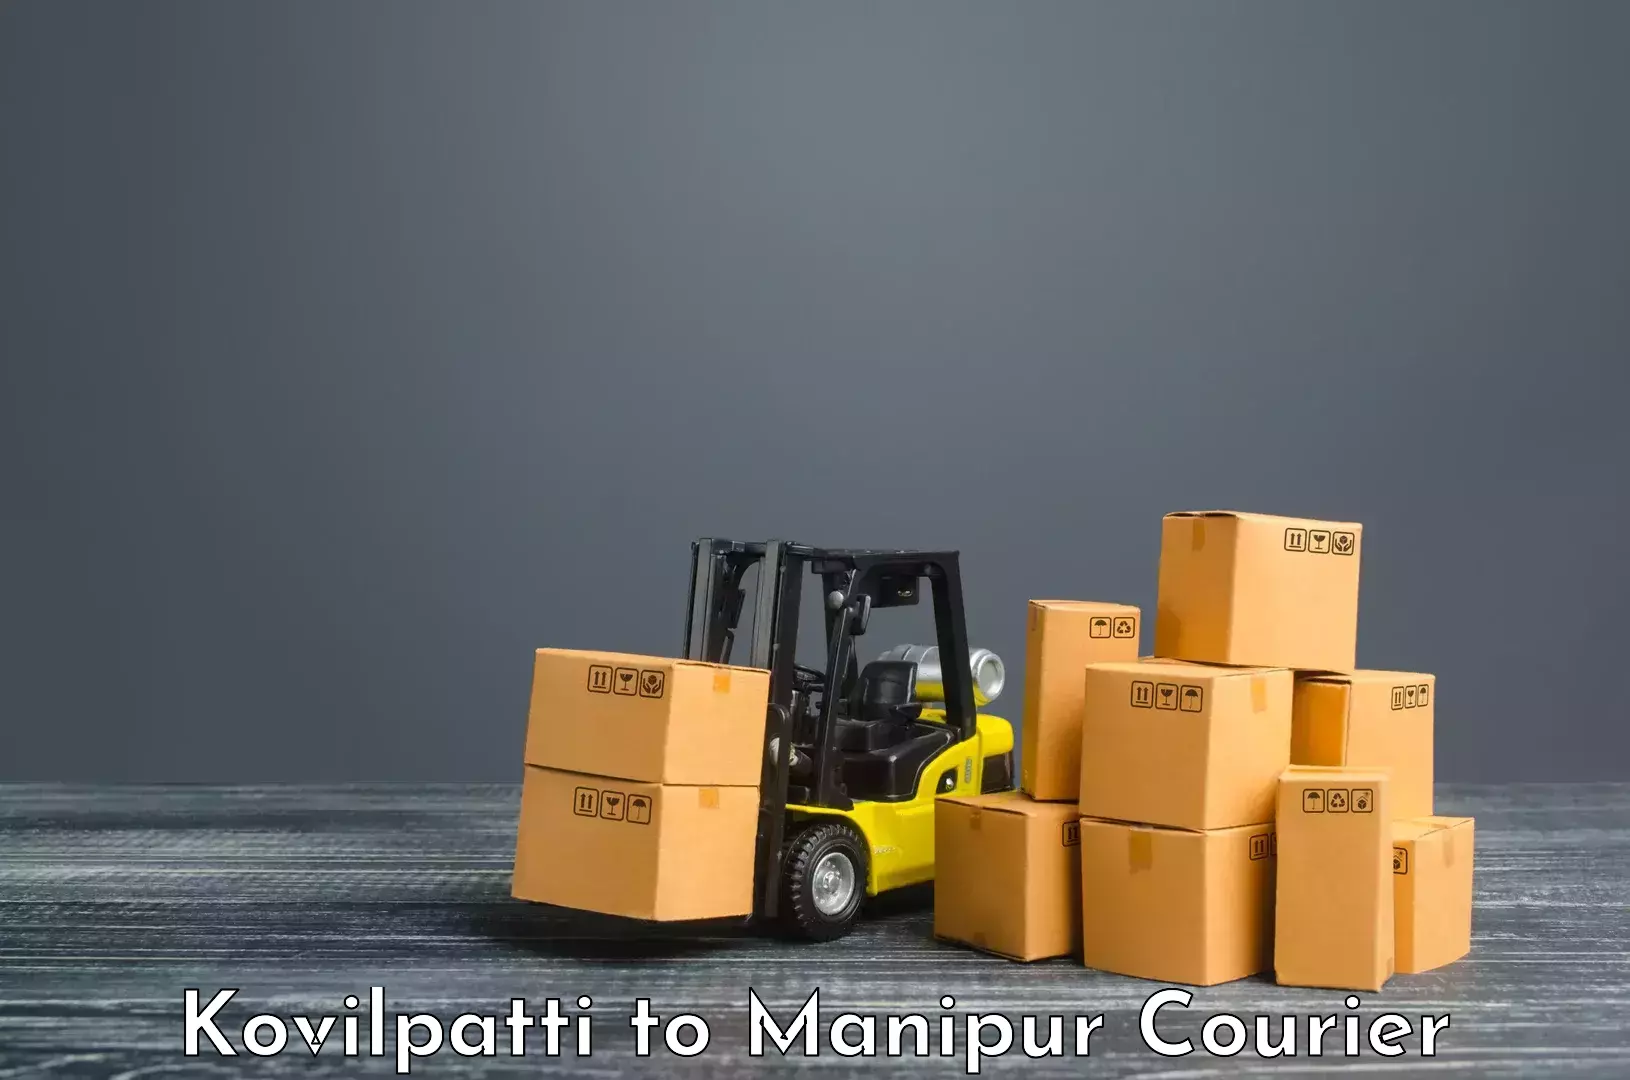 Lightweight courier Kovilpatti to Manipur